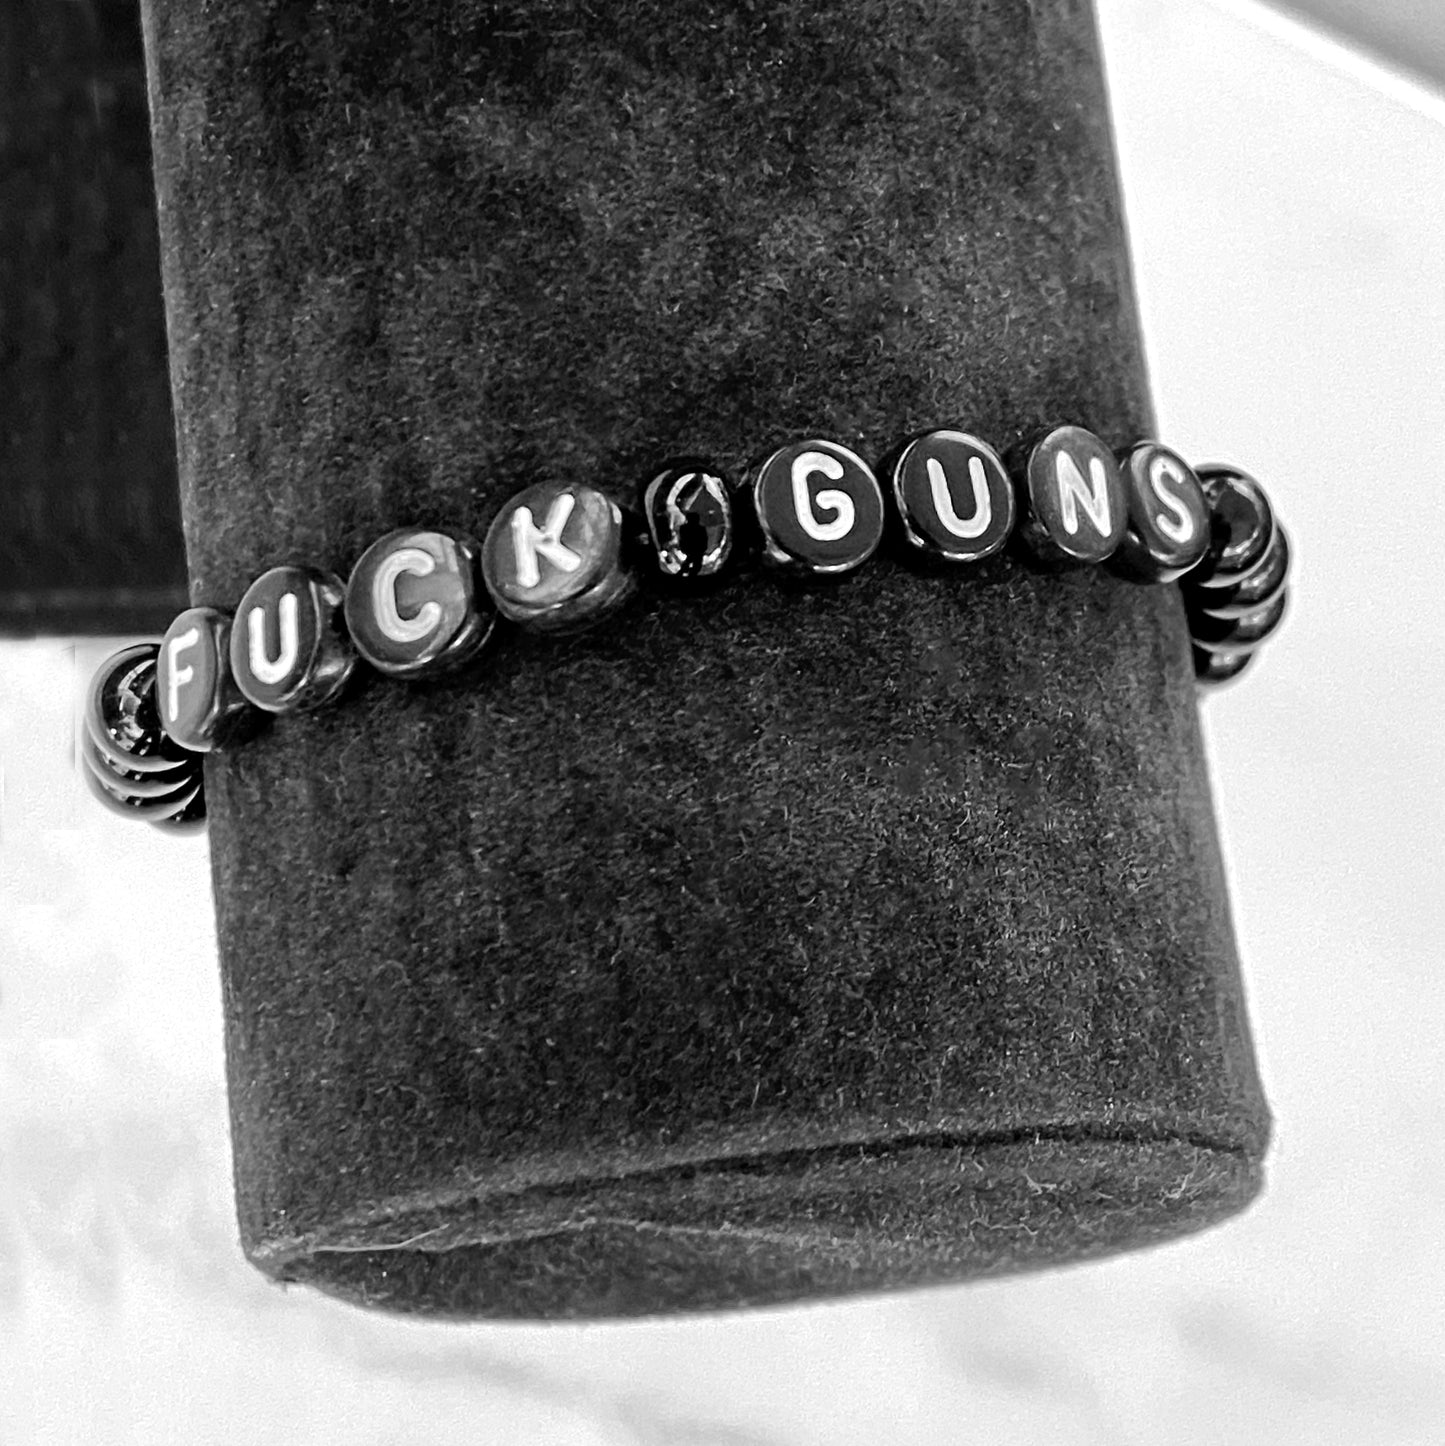 Black Onyx gemstone "Fuck Guns" stretch Bracelet